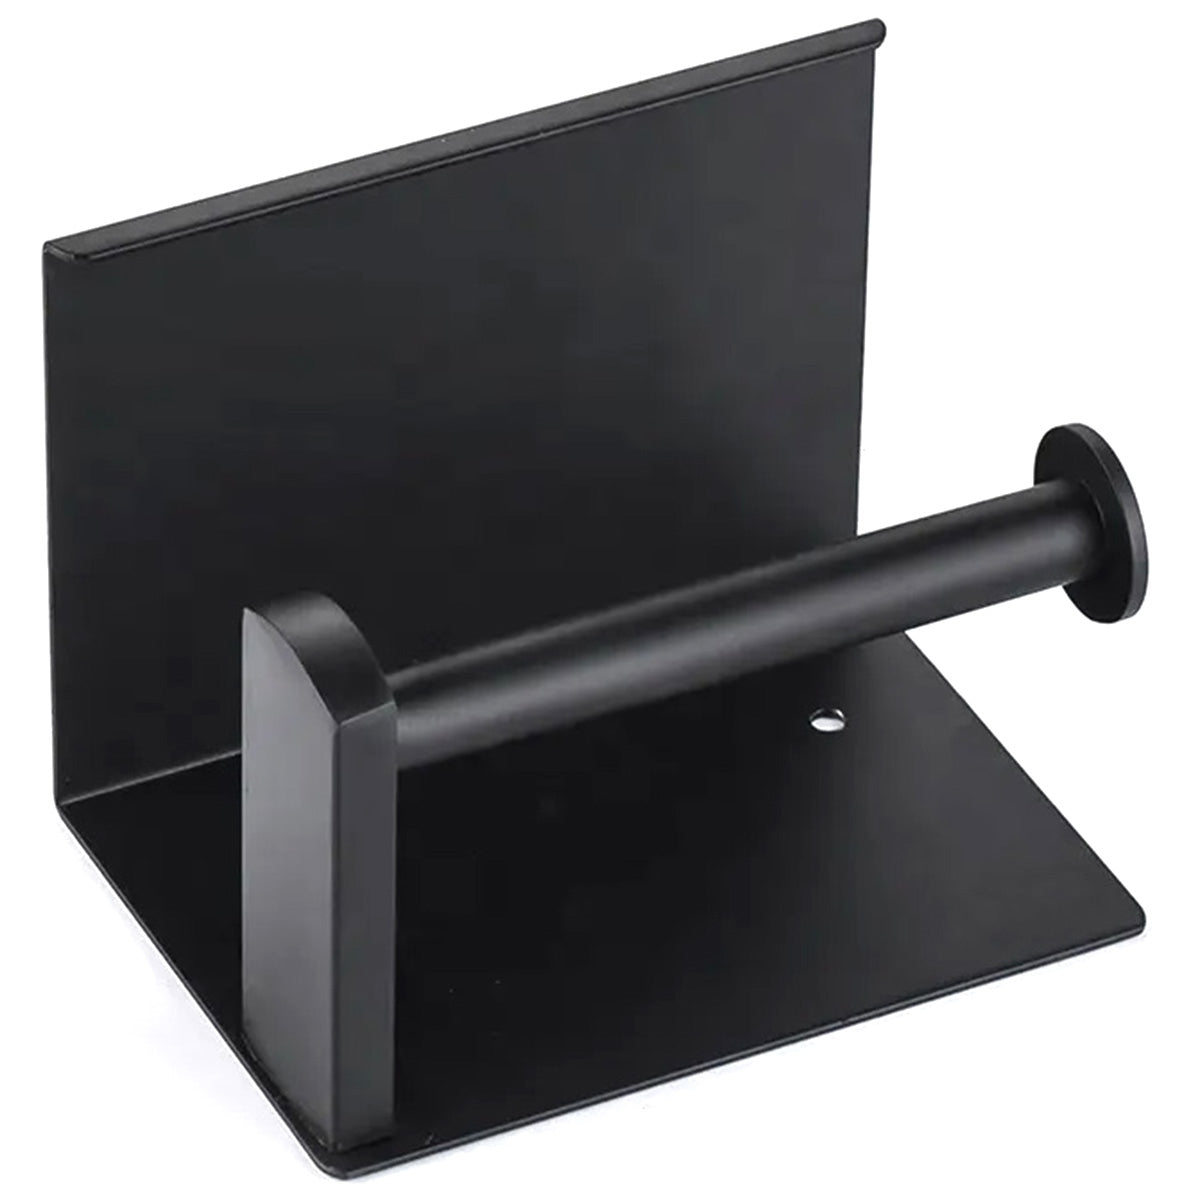 Suport pentru hartie igienica, Zola®, stil loft, otel negru, 13.5x10.7x10.2 cm, negru